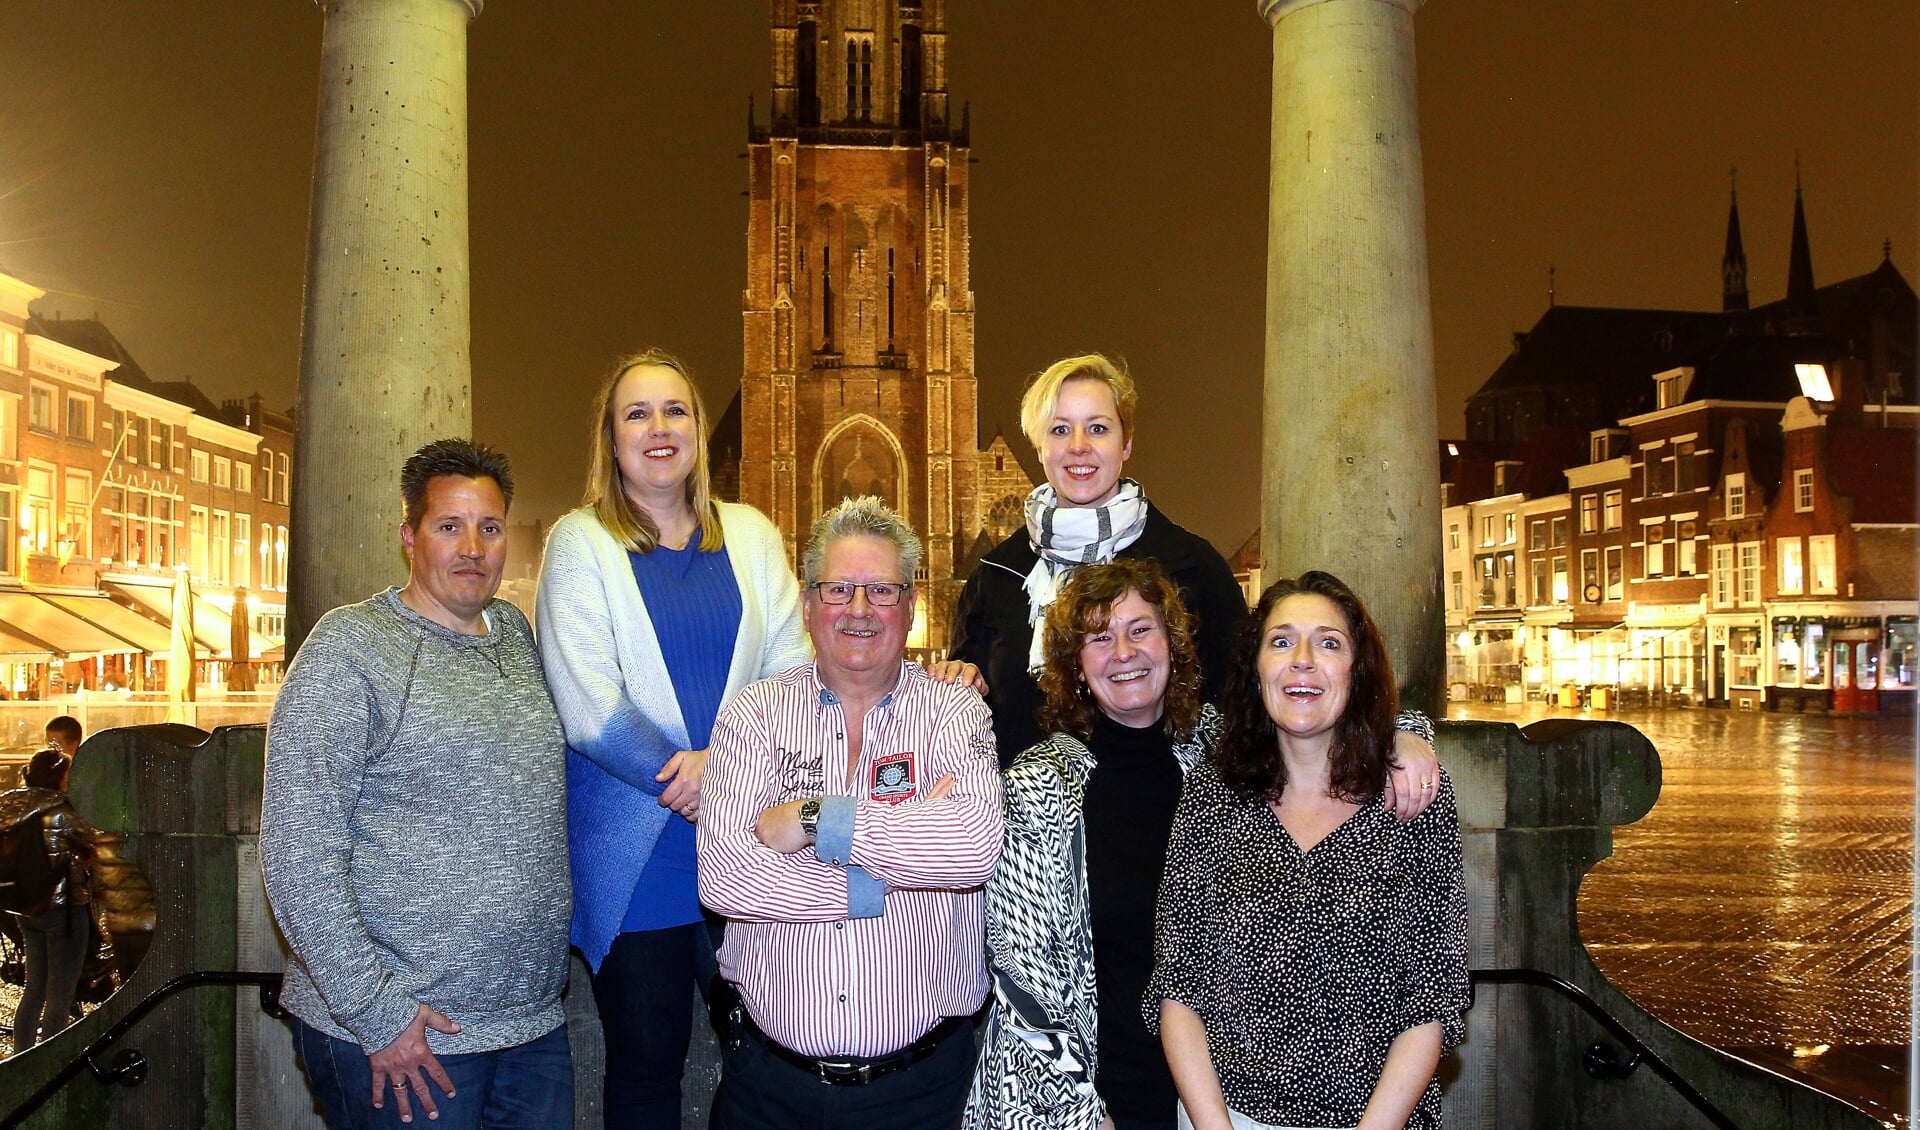 Het nieuwe bestuur van Swim to Fight Cancer Delft, met van links naar rechts: Dennis Hendriks, Annemarie Spiessens, Sjaak Lispet, Leni Boekhout, Inge Driessen en Diana Eradus.